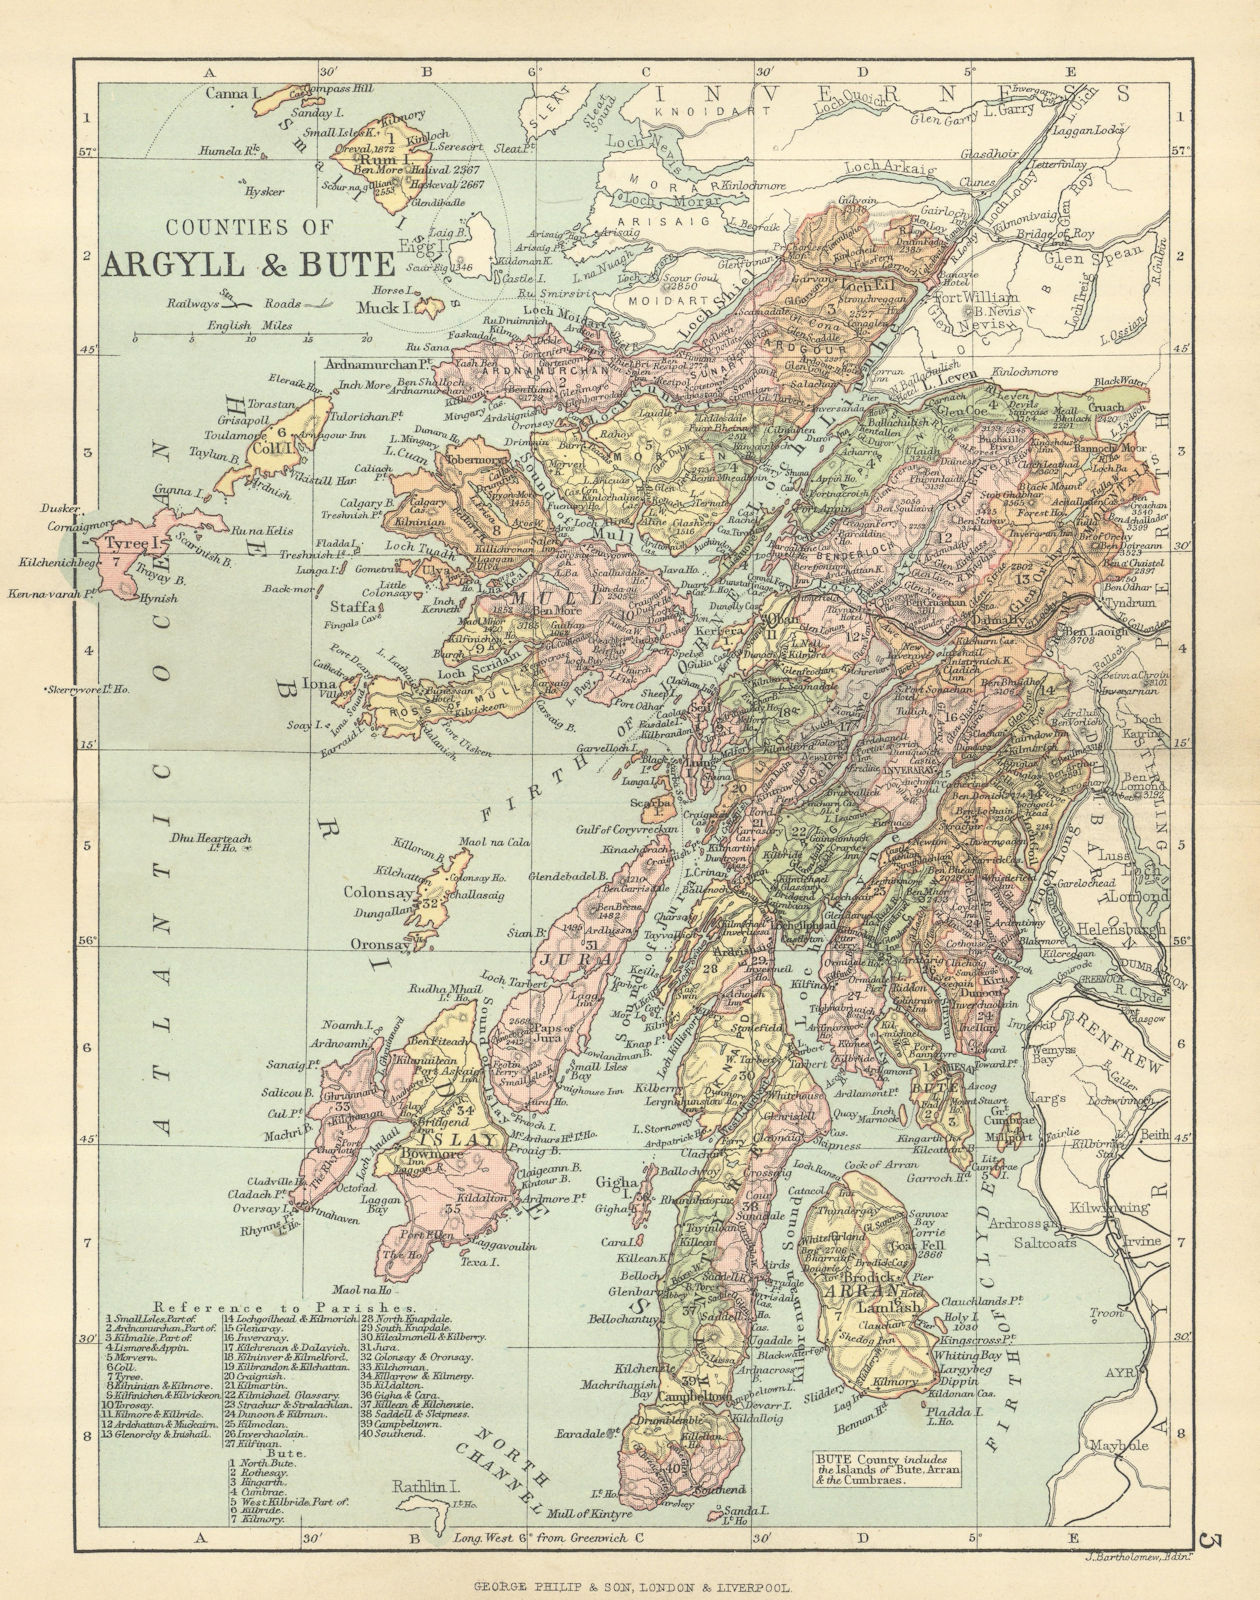 Associate Product 'Counties of Argyll & Bute'. Argyllshire & Buteshire. BARTHOLOMEW 1886 old map